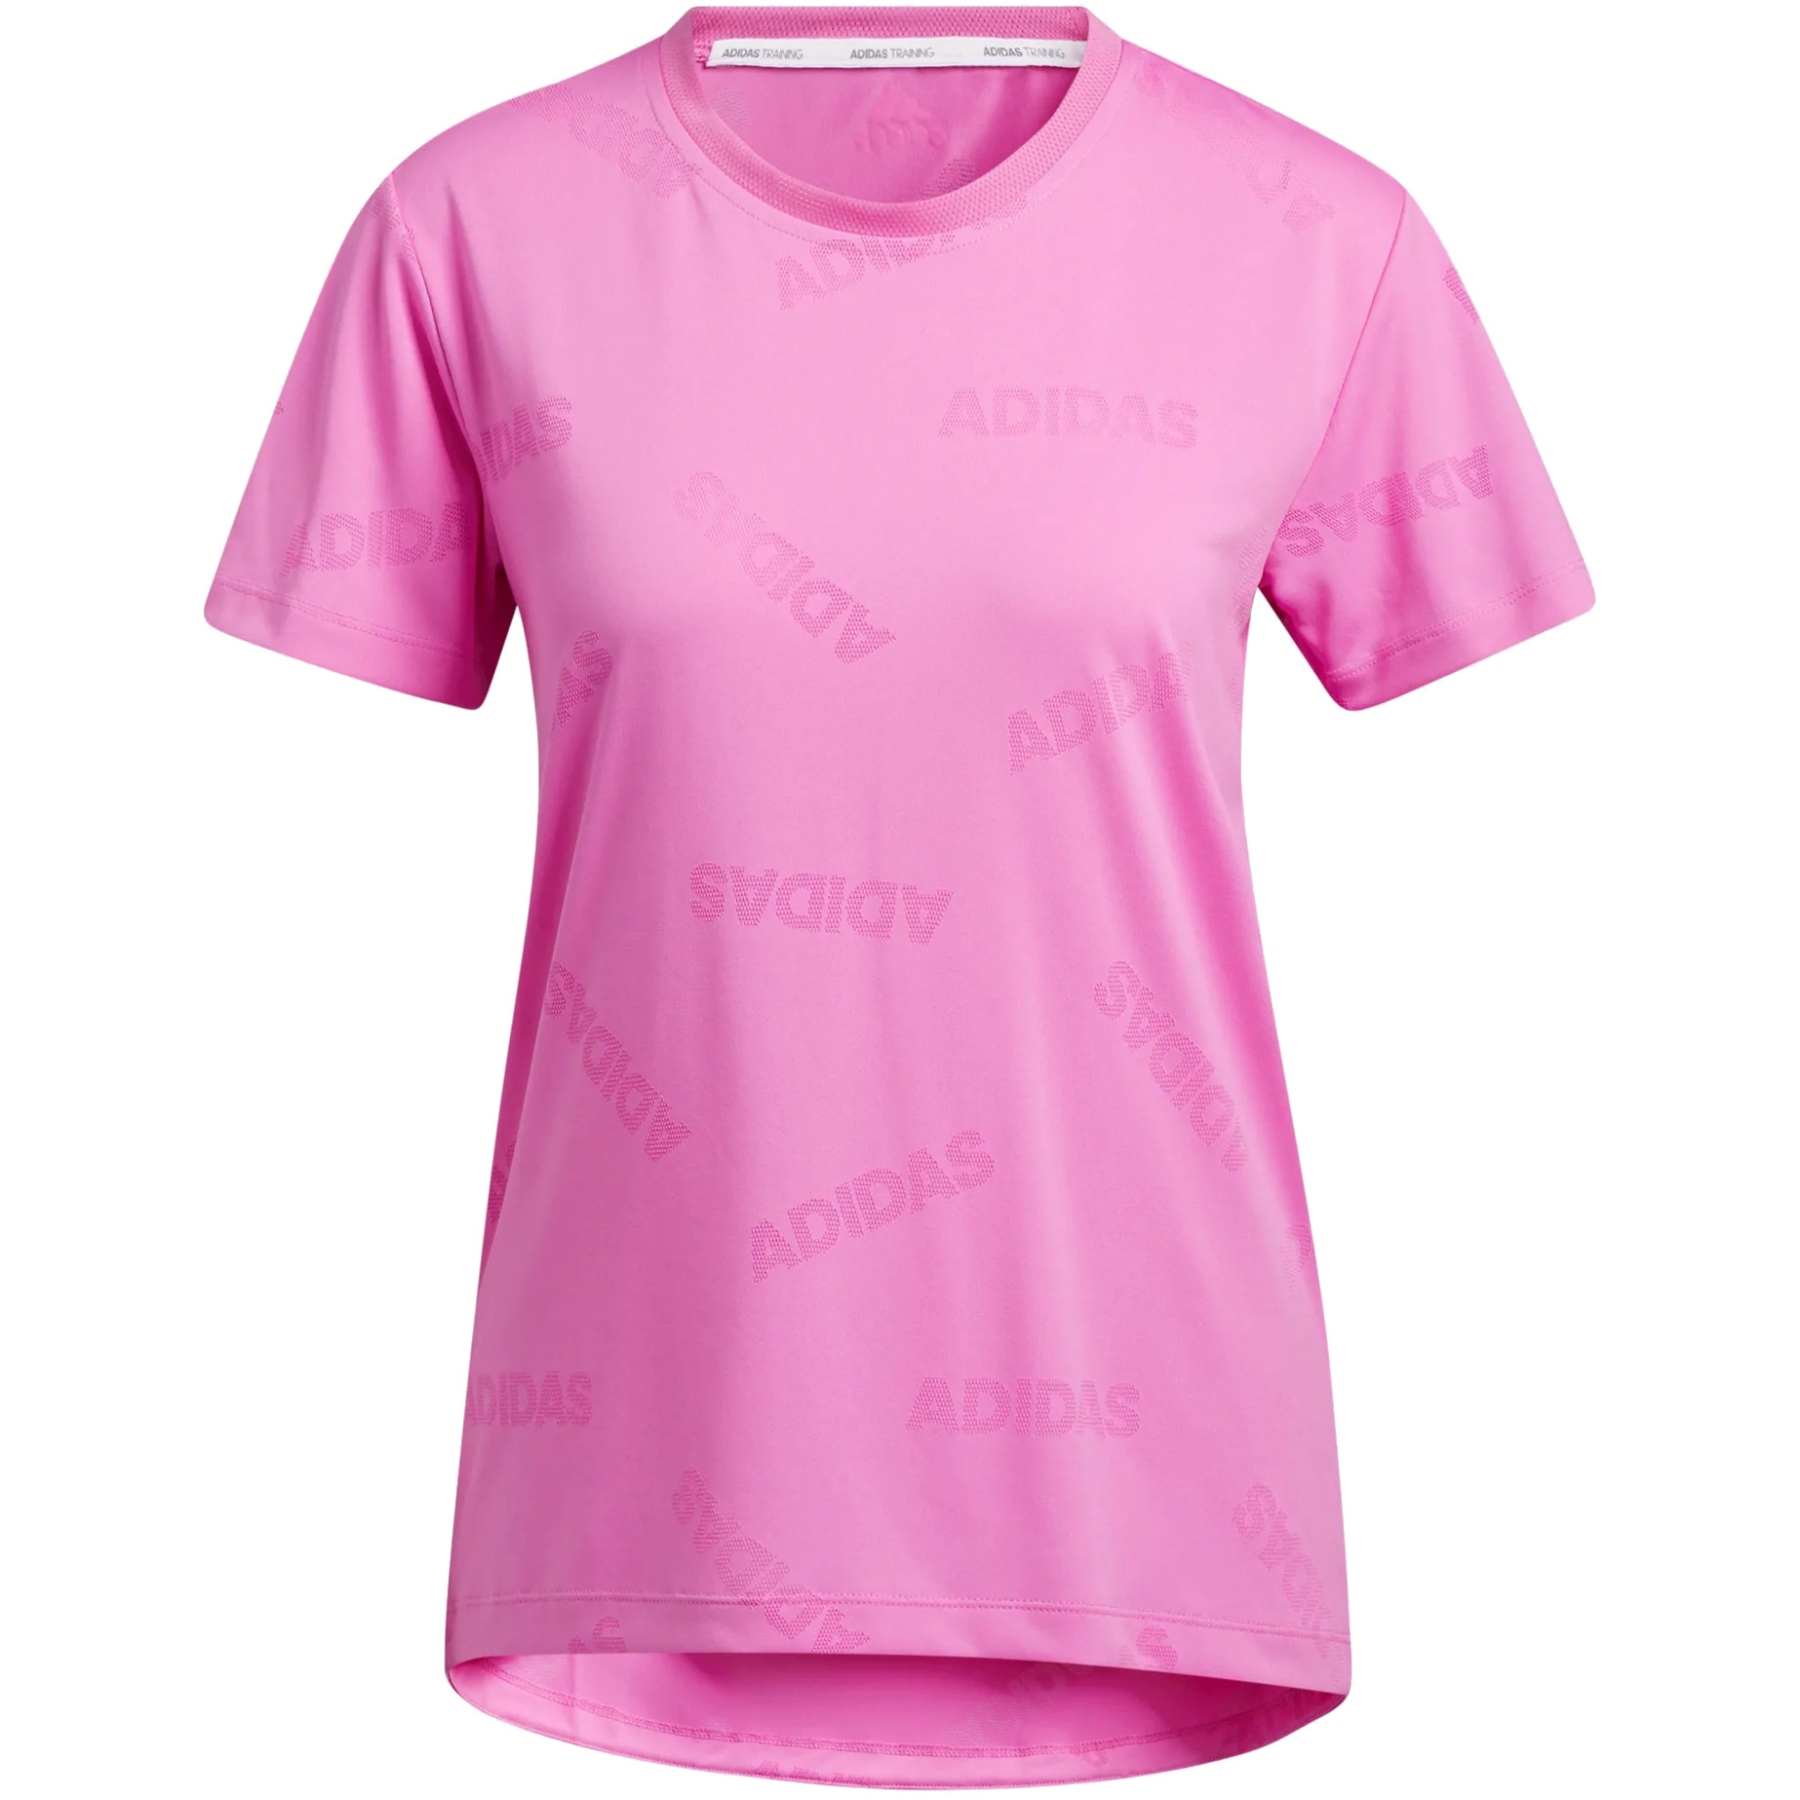 Bild von adidas Frauen Aeroknit T-Shirt - screaming pink/wild pink GQ9429